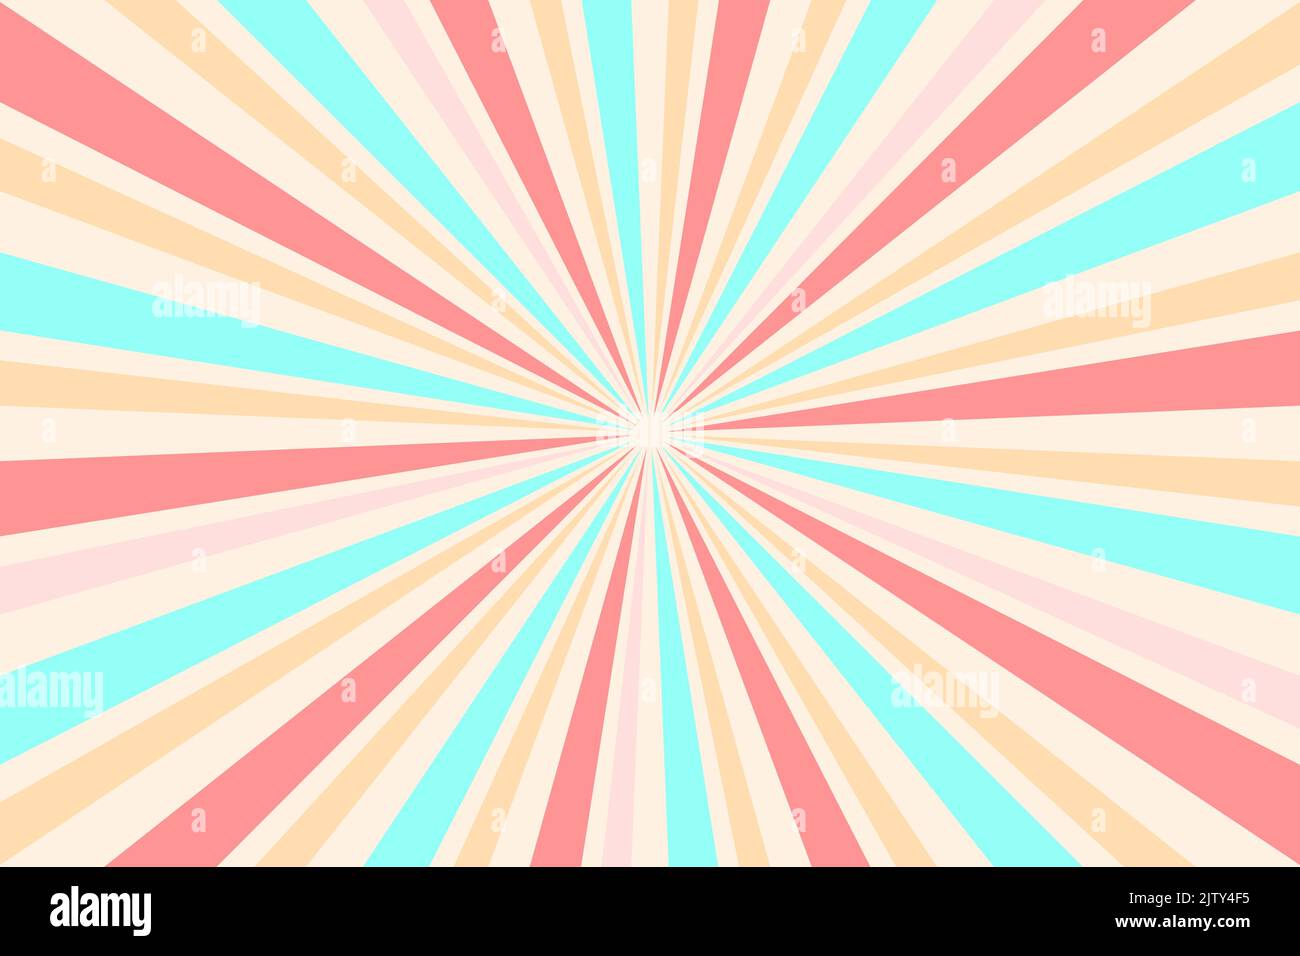 Sunburst geometrische Ray Stern Hintergrund mit trendigen Pastellfarben. Beige, Korallen und Blau Farben. Vektorgrafik Stock Vektor